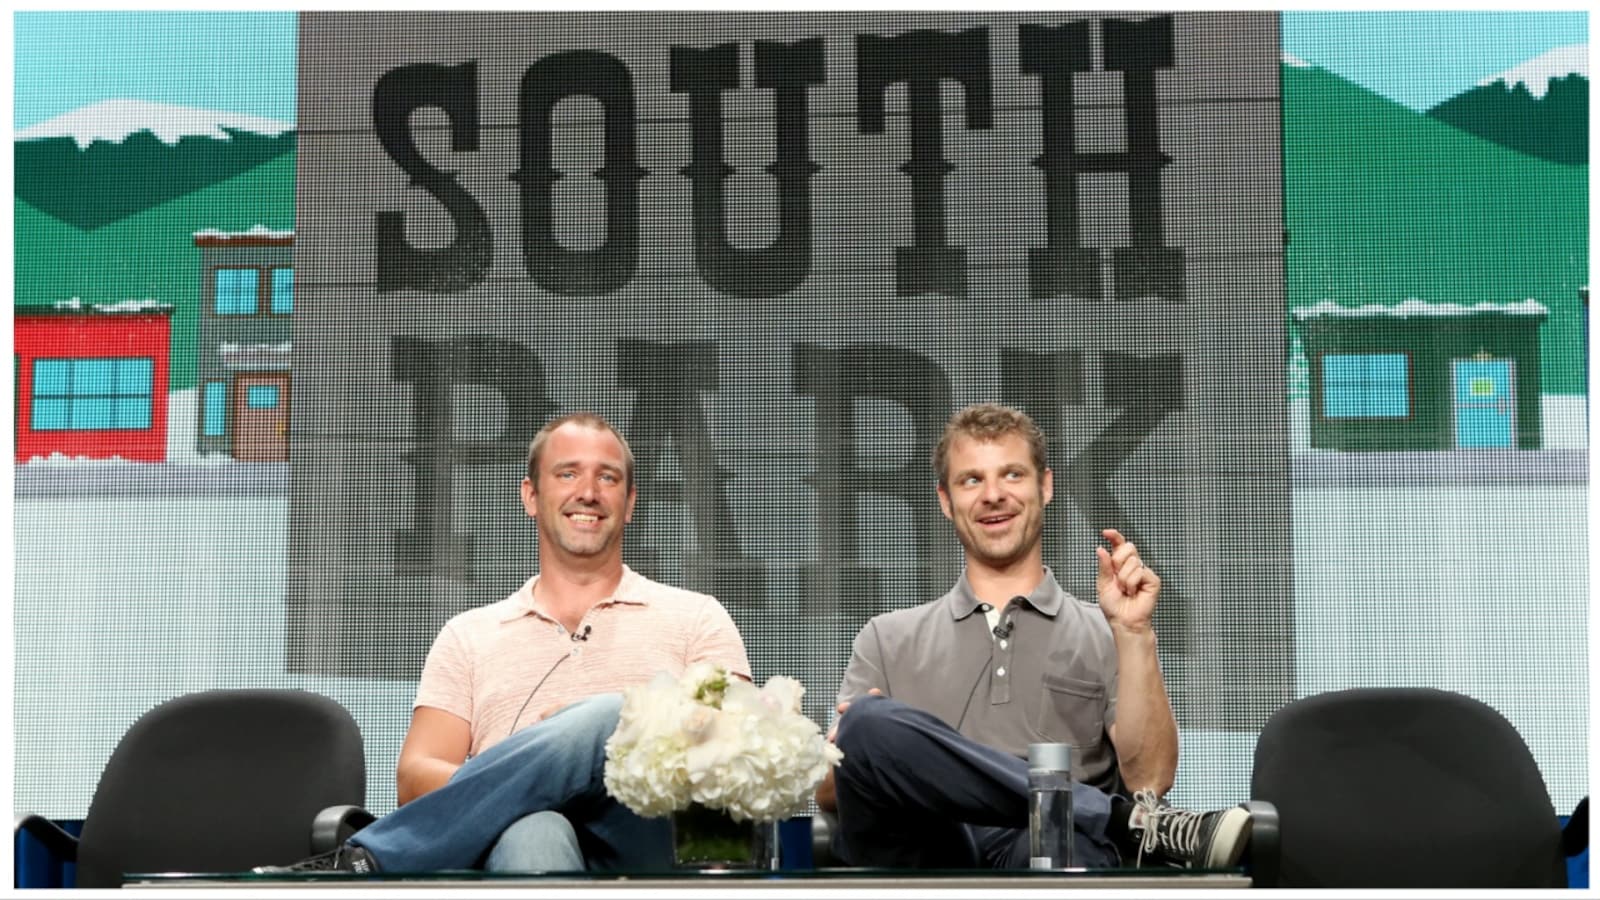 South Park Creators Trey Parker & Matt Stone Land $900 Million Deal